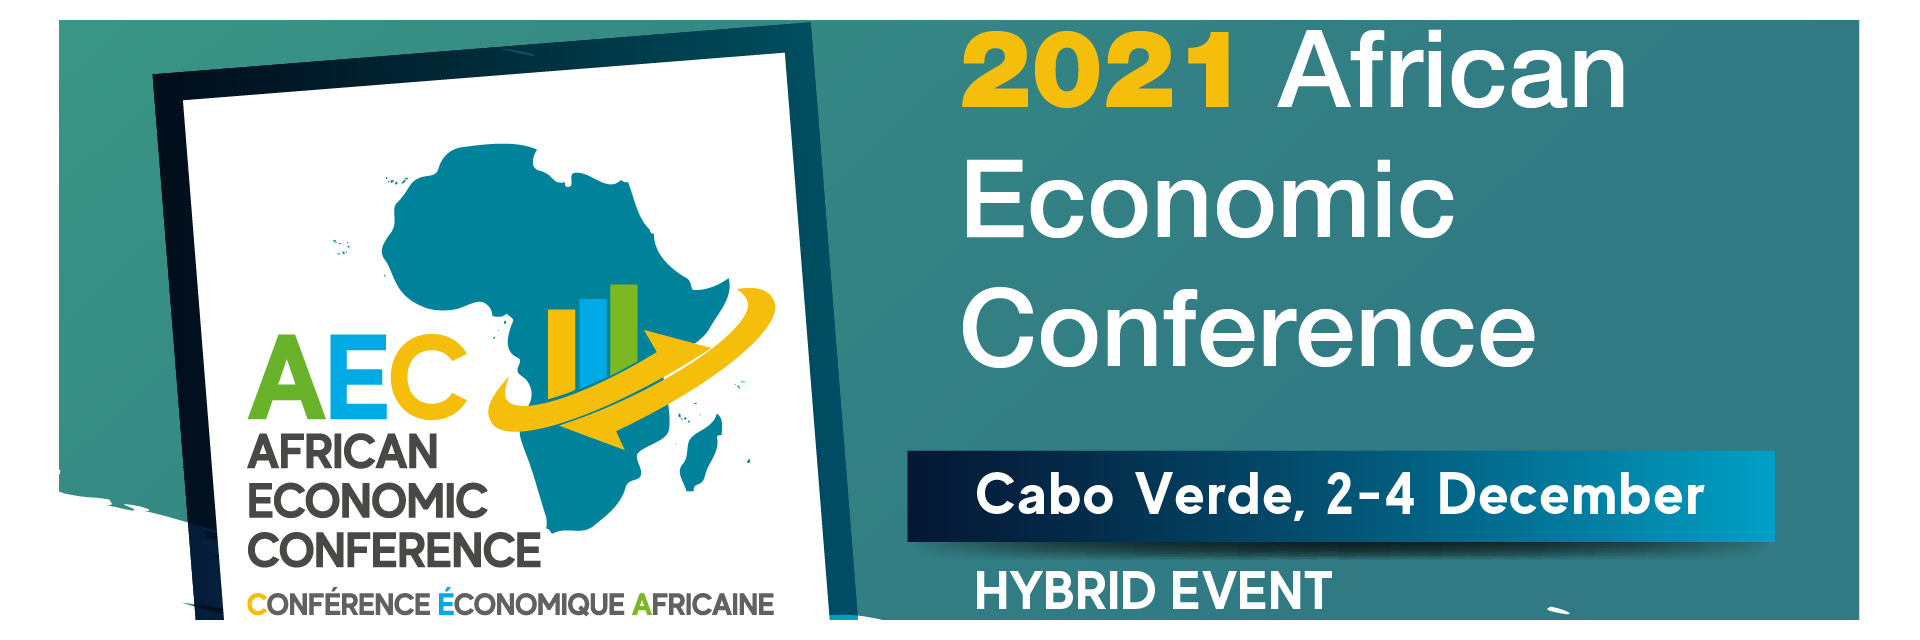 Conférence économique africaine 2021